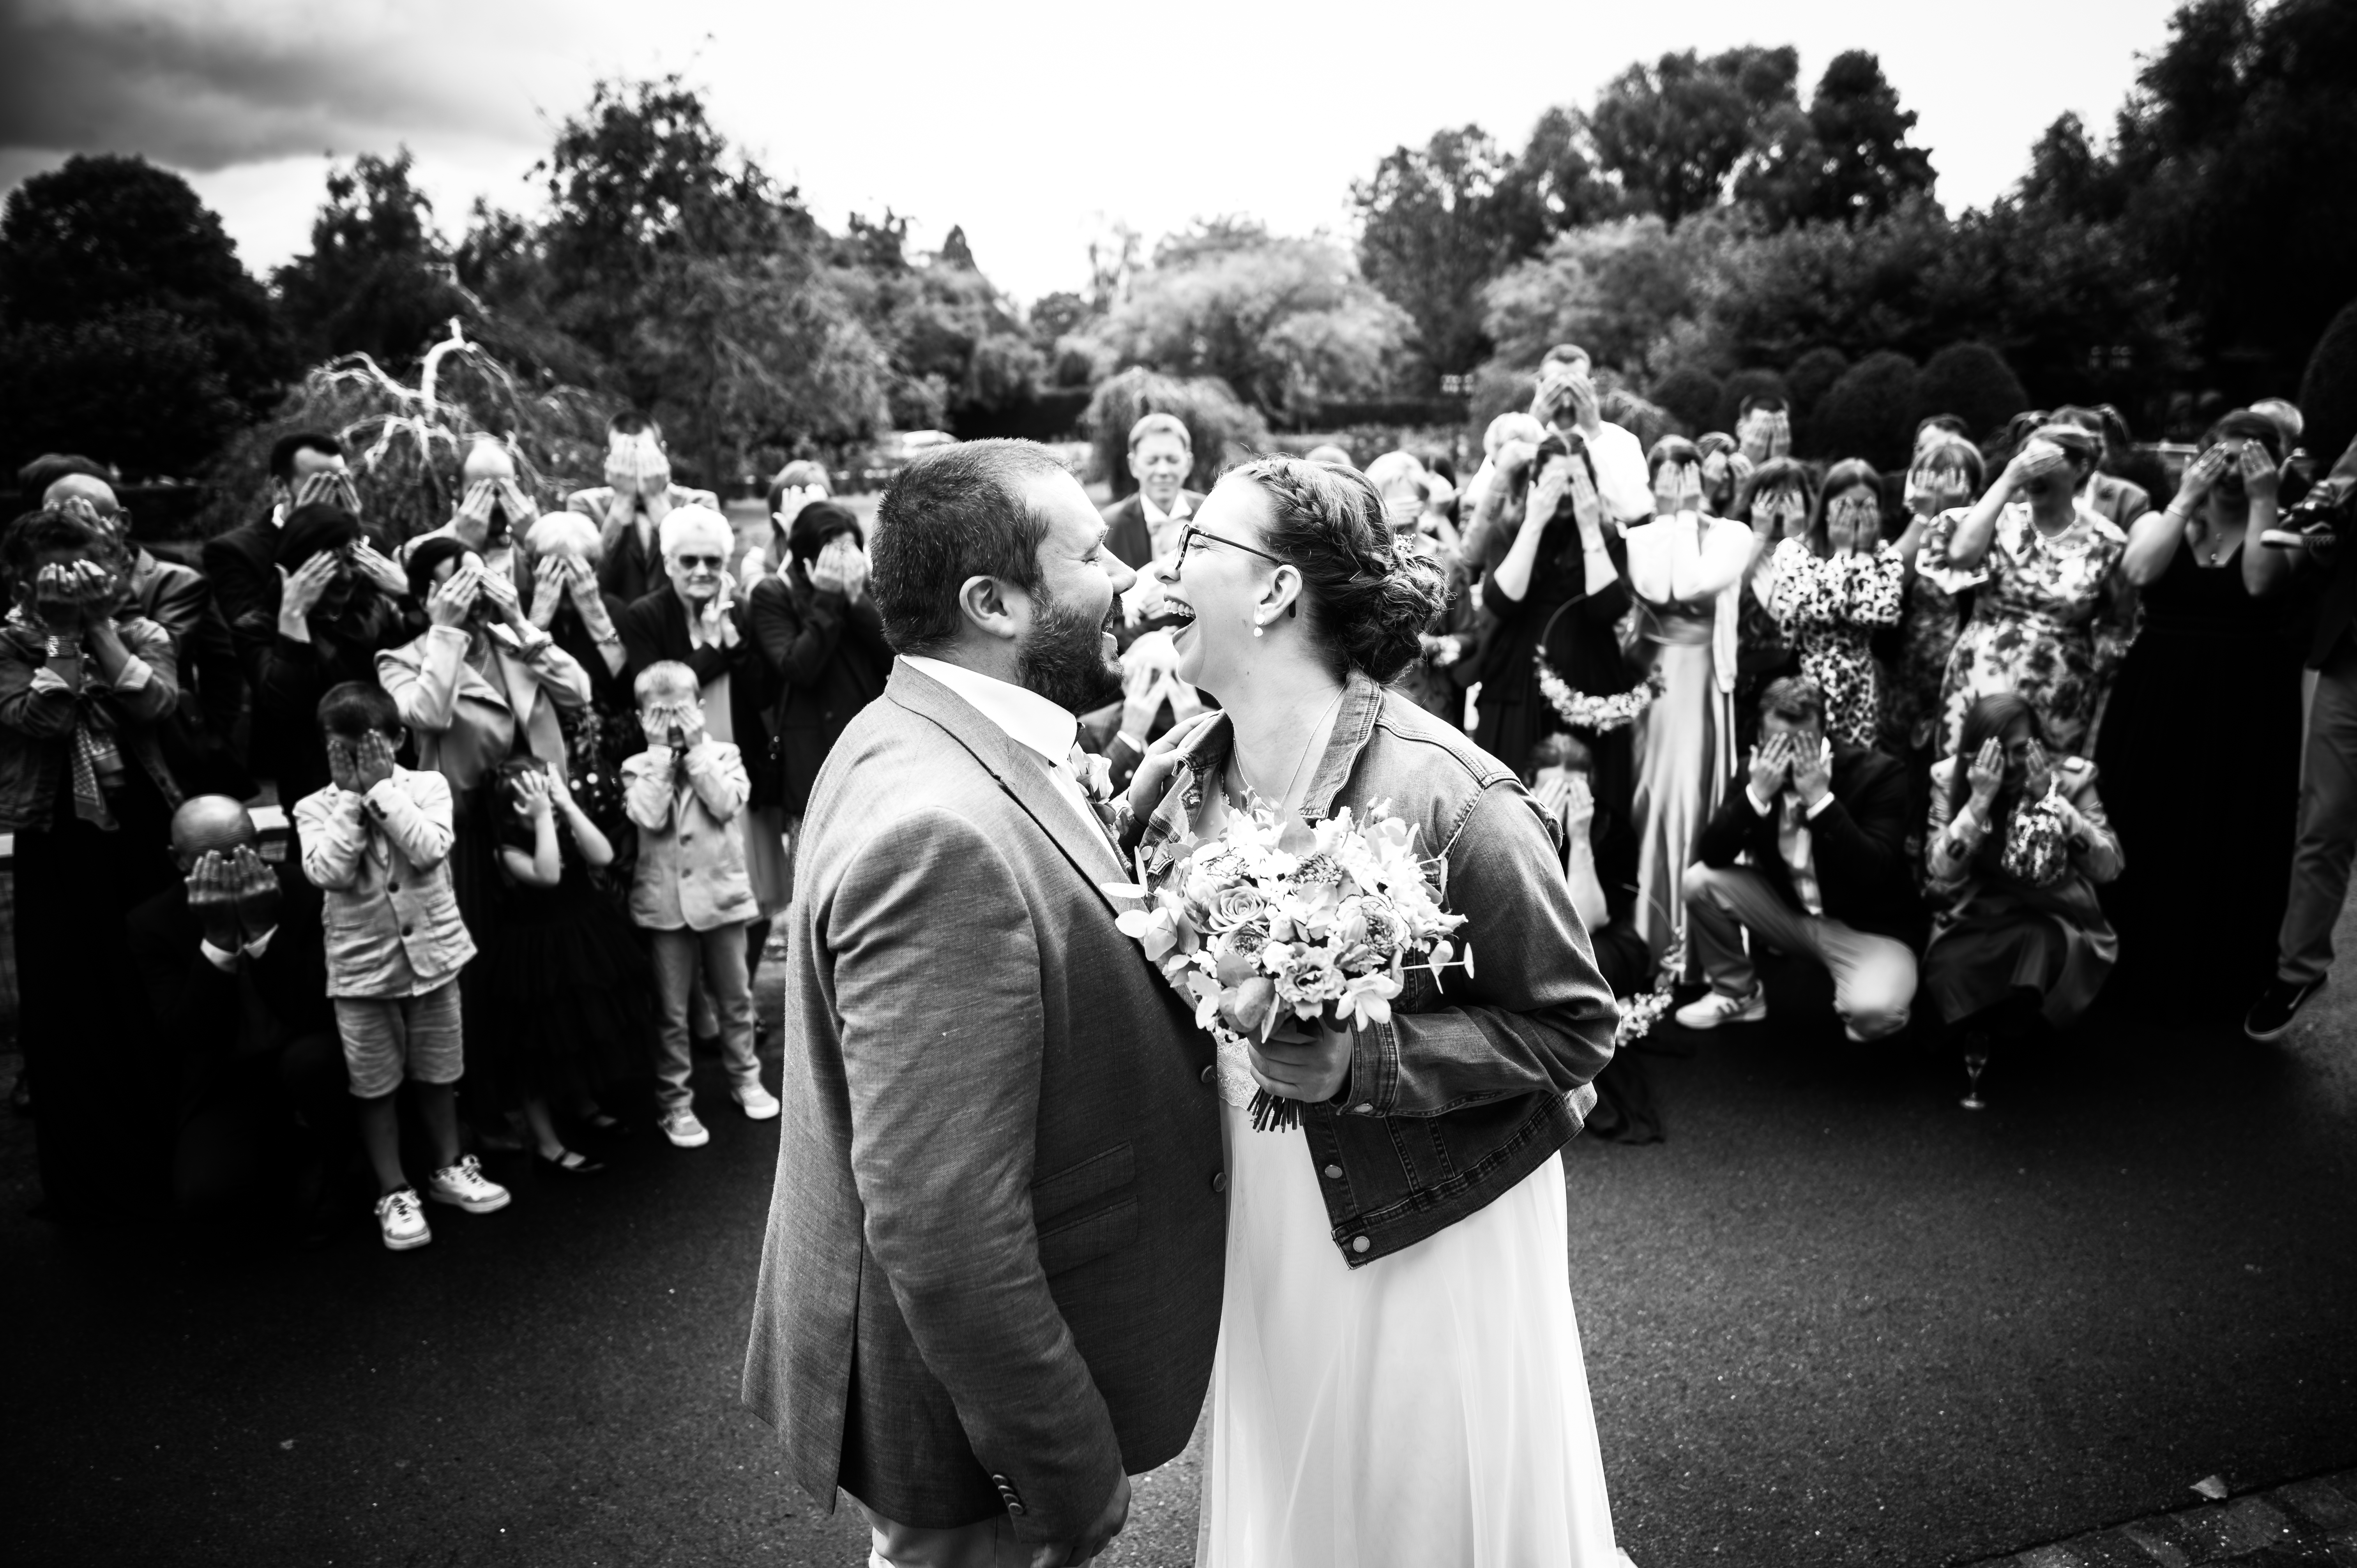 mariage - robe de mariée - photo de groupe - fun - photo noir et blanc - couple - photo de mariés